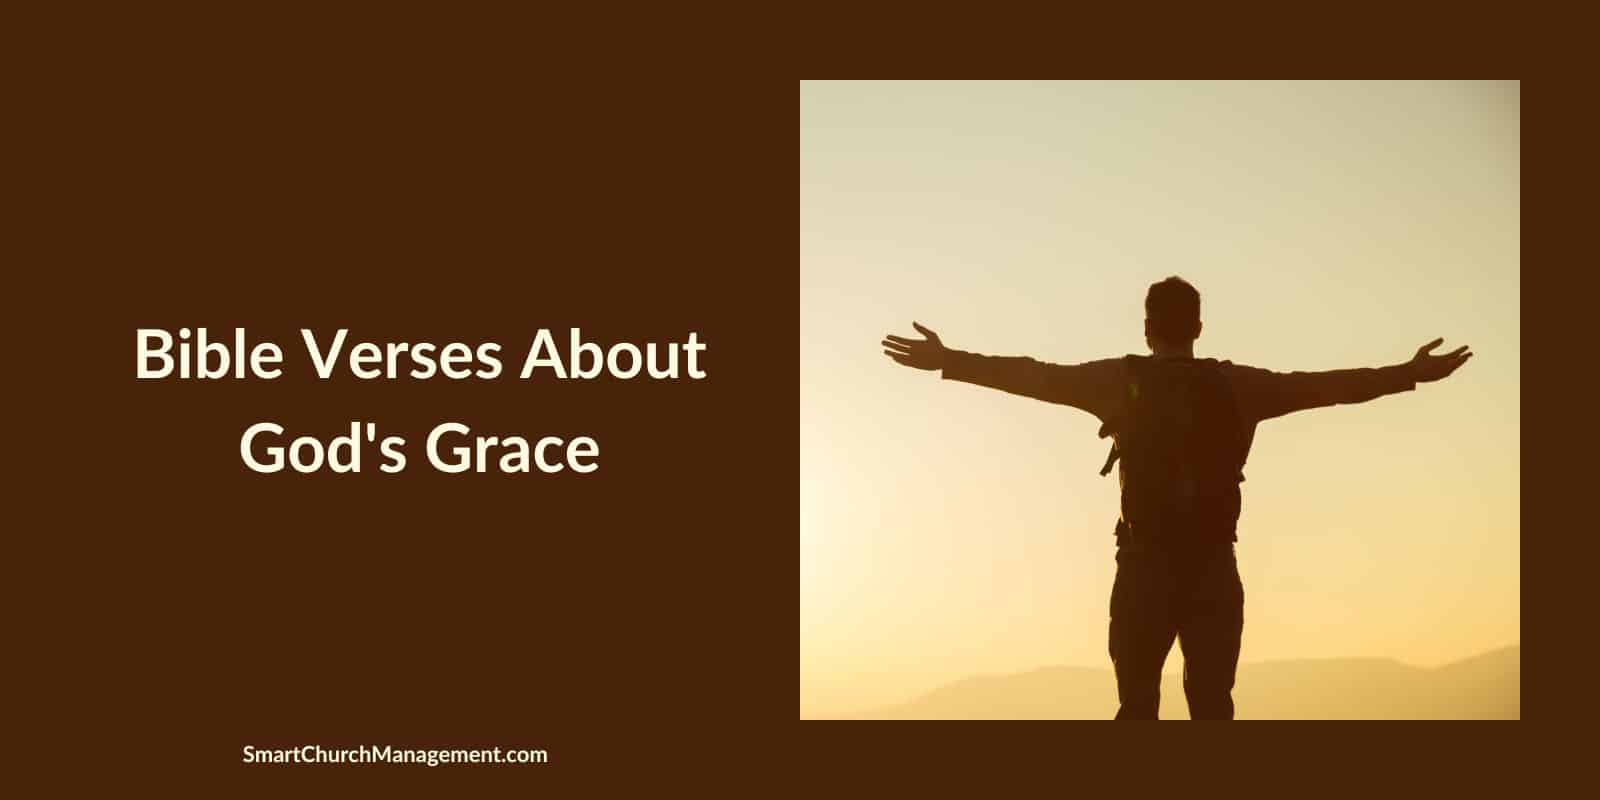 Bible verses about God's grace